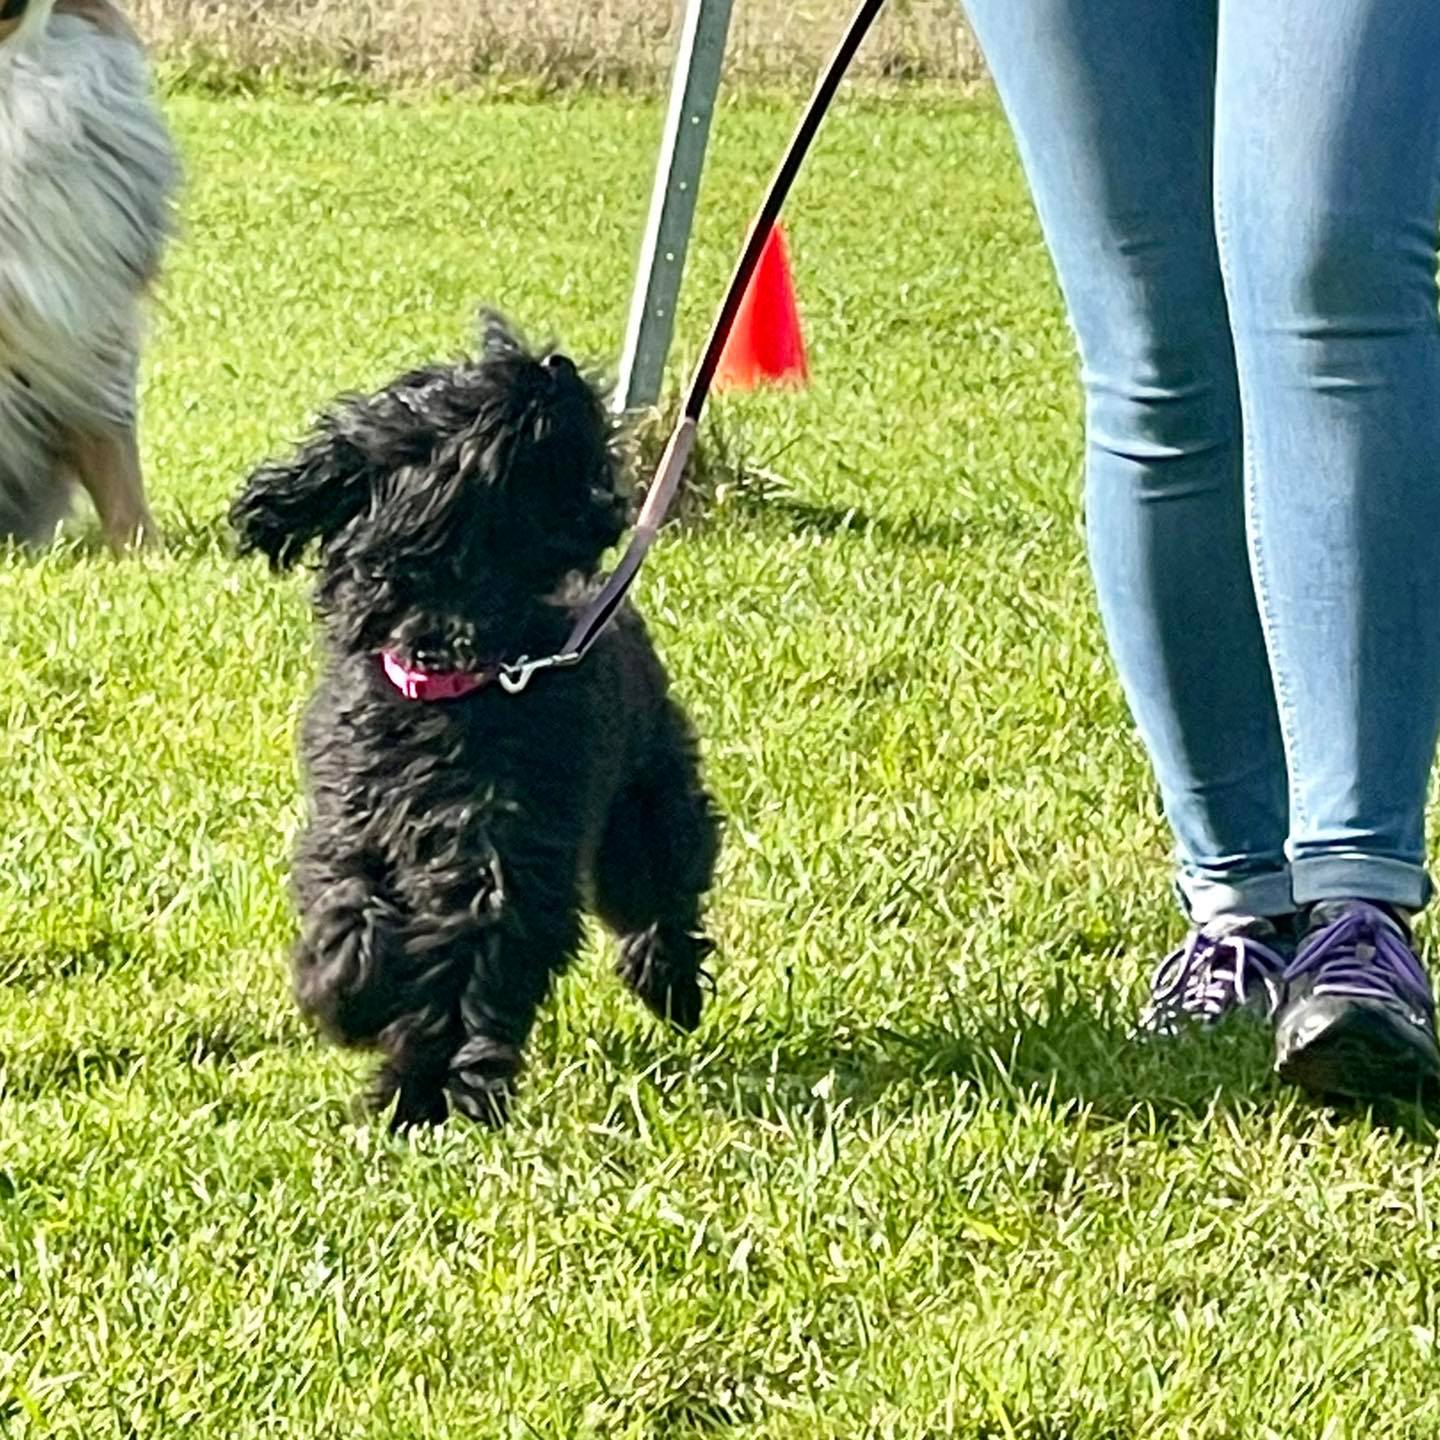 A dog named Lola outside running alongside their owner